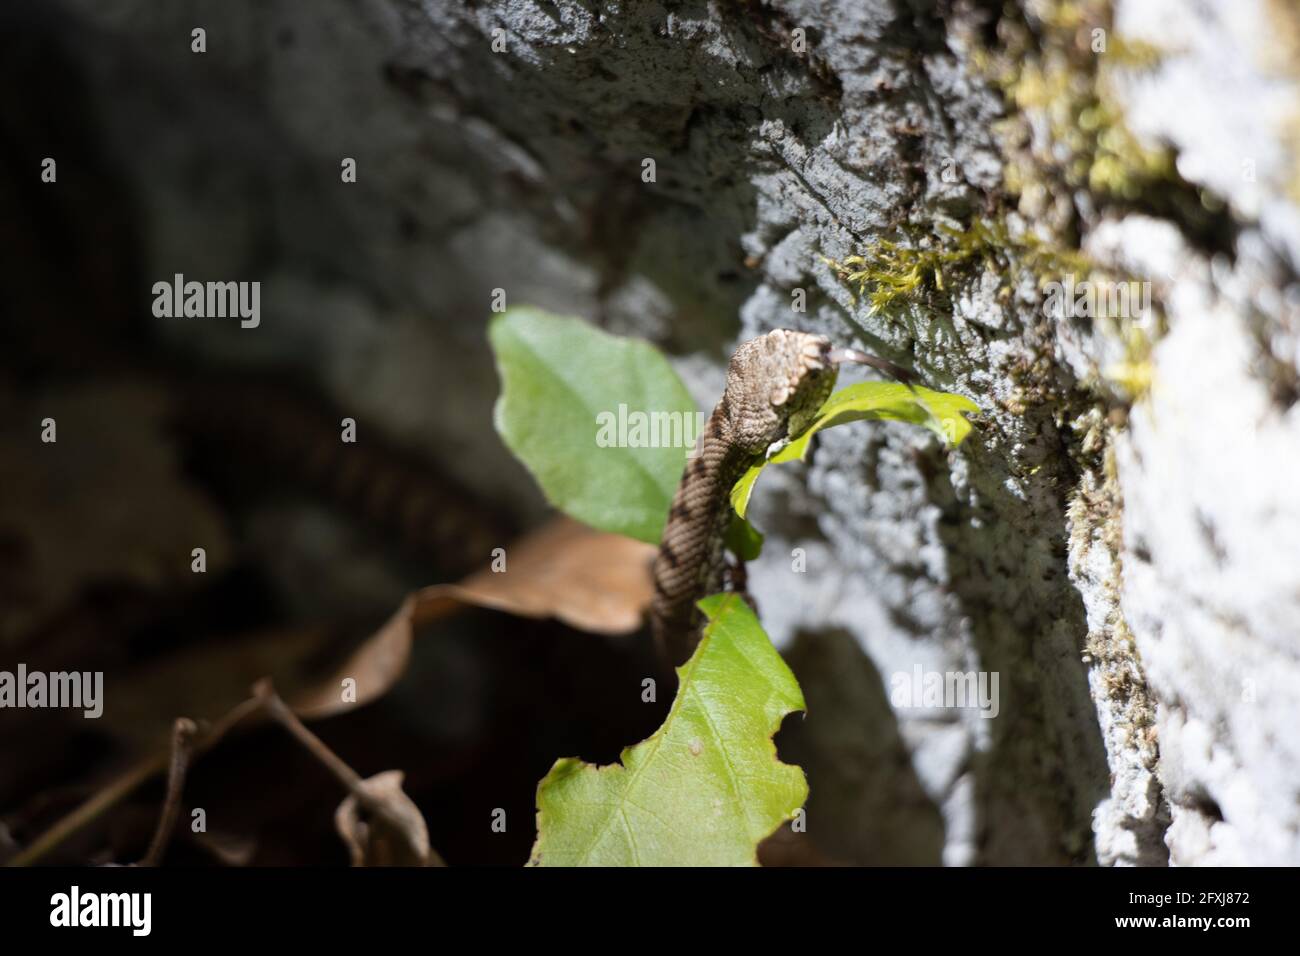 Jeune serpent sauvage (Vipera berus), additionneur européen commun. Faune dans les montagnes jurassic. La Neuveville, Suisse. Banque D'Images